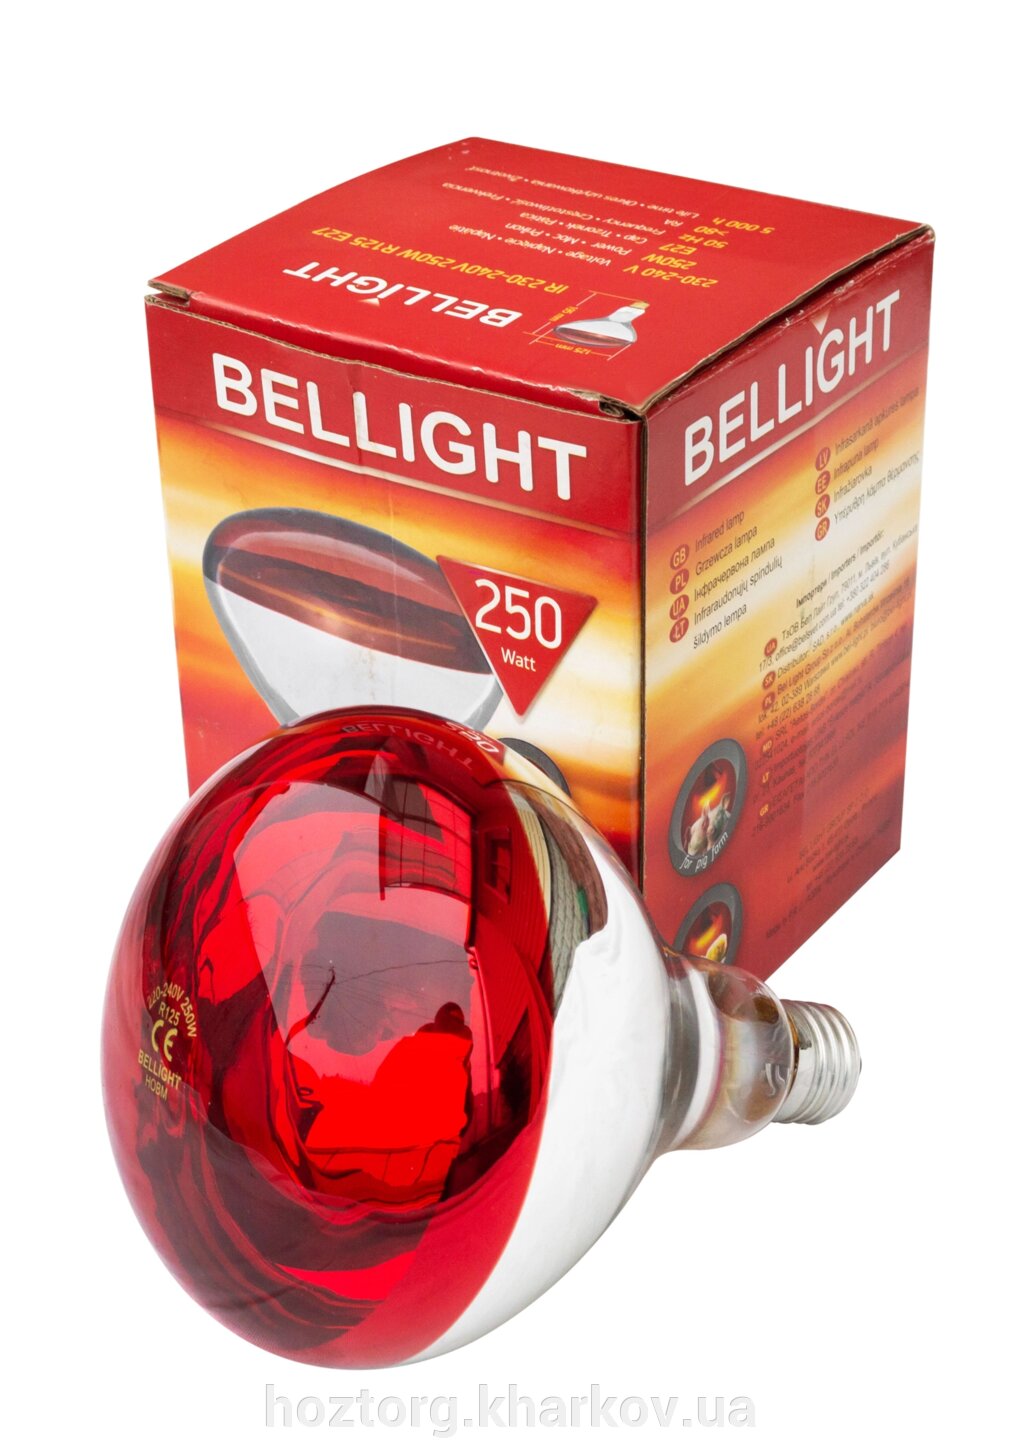 Лампа ІКЗК 250 Вт Е27 в коробочці (Bellight) - відгуки